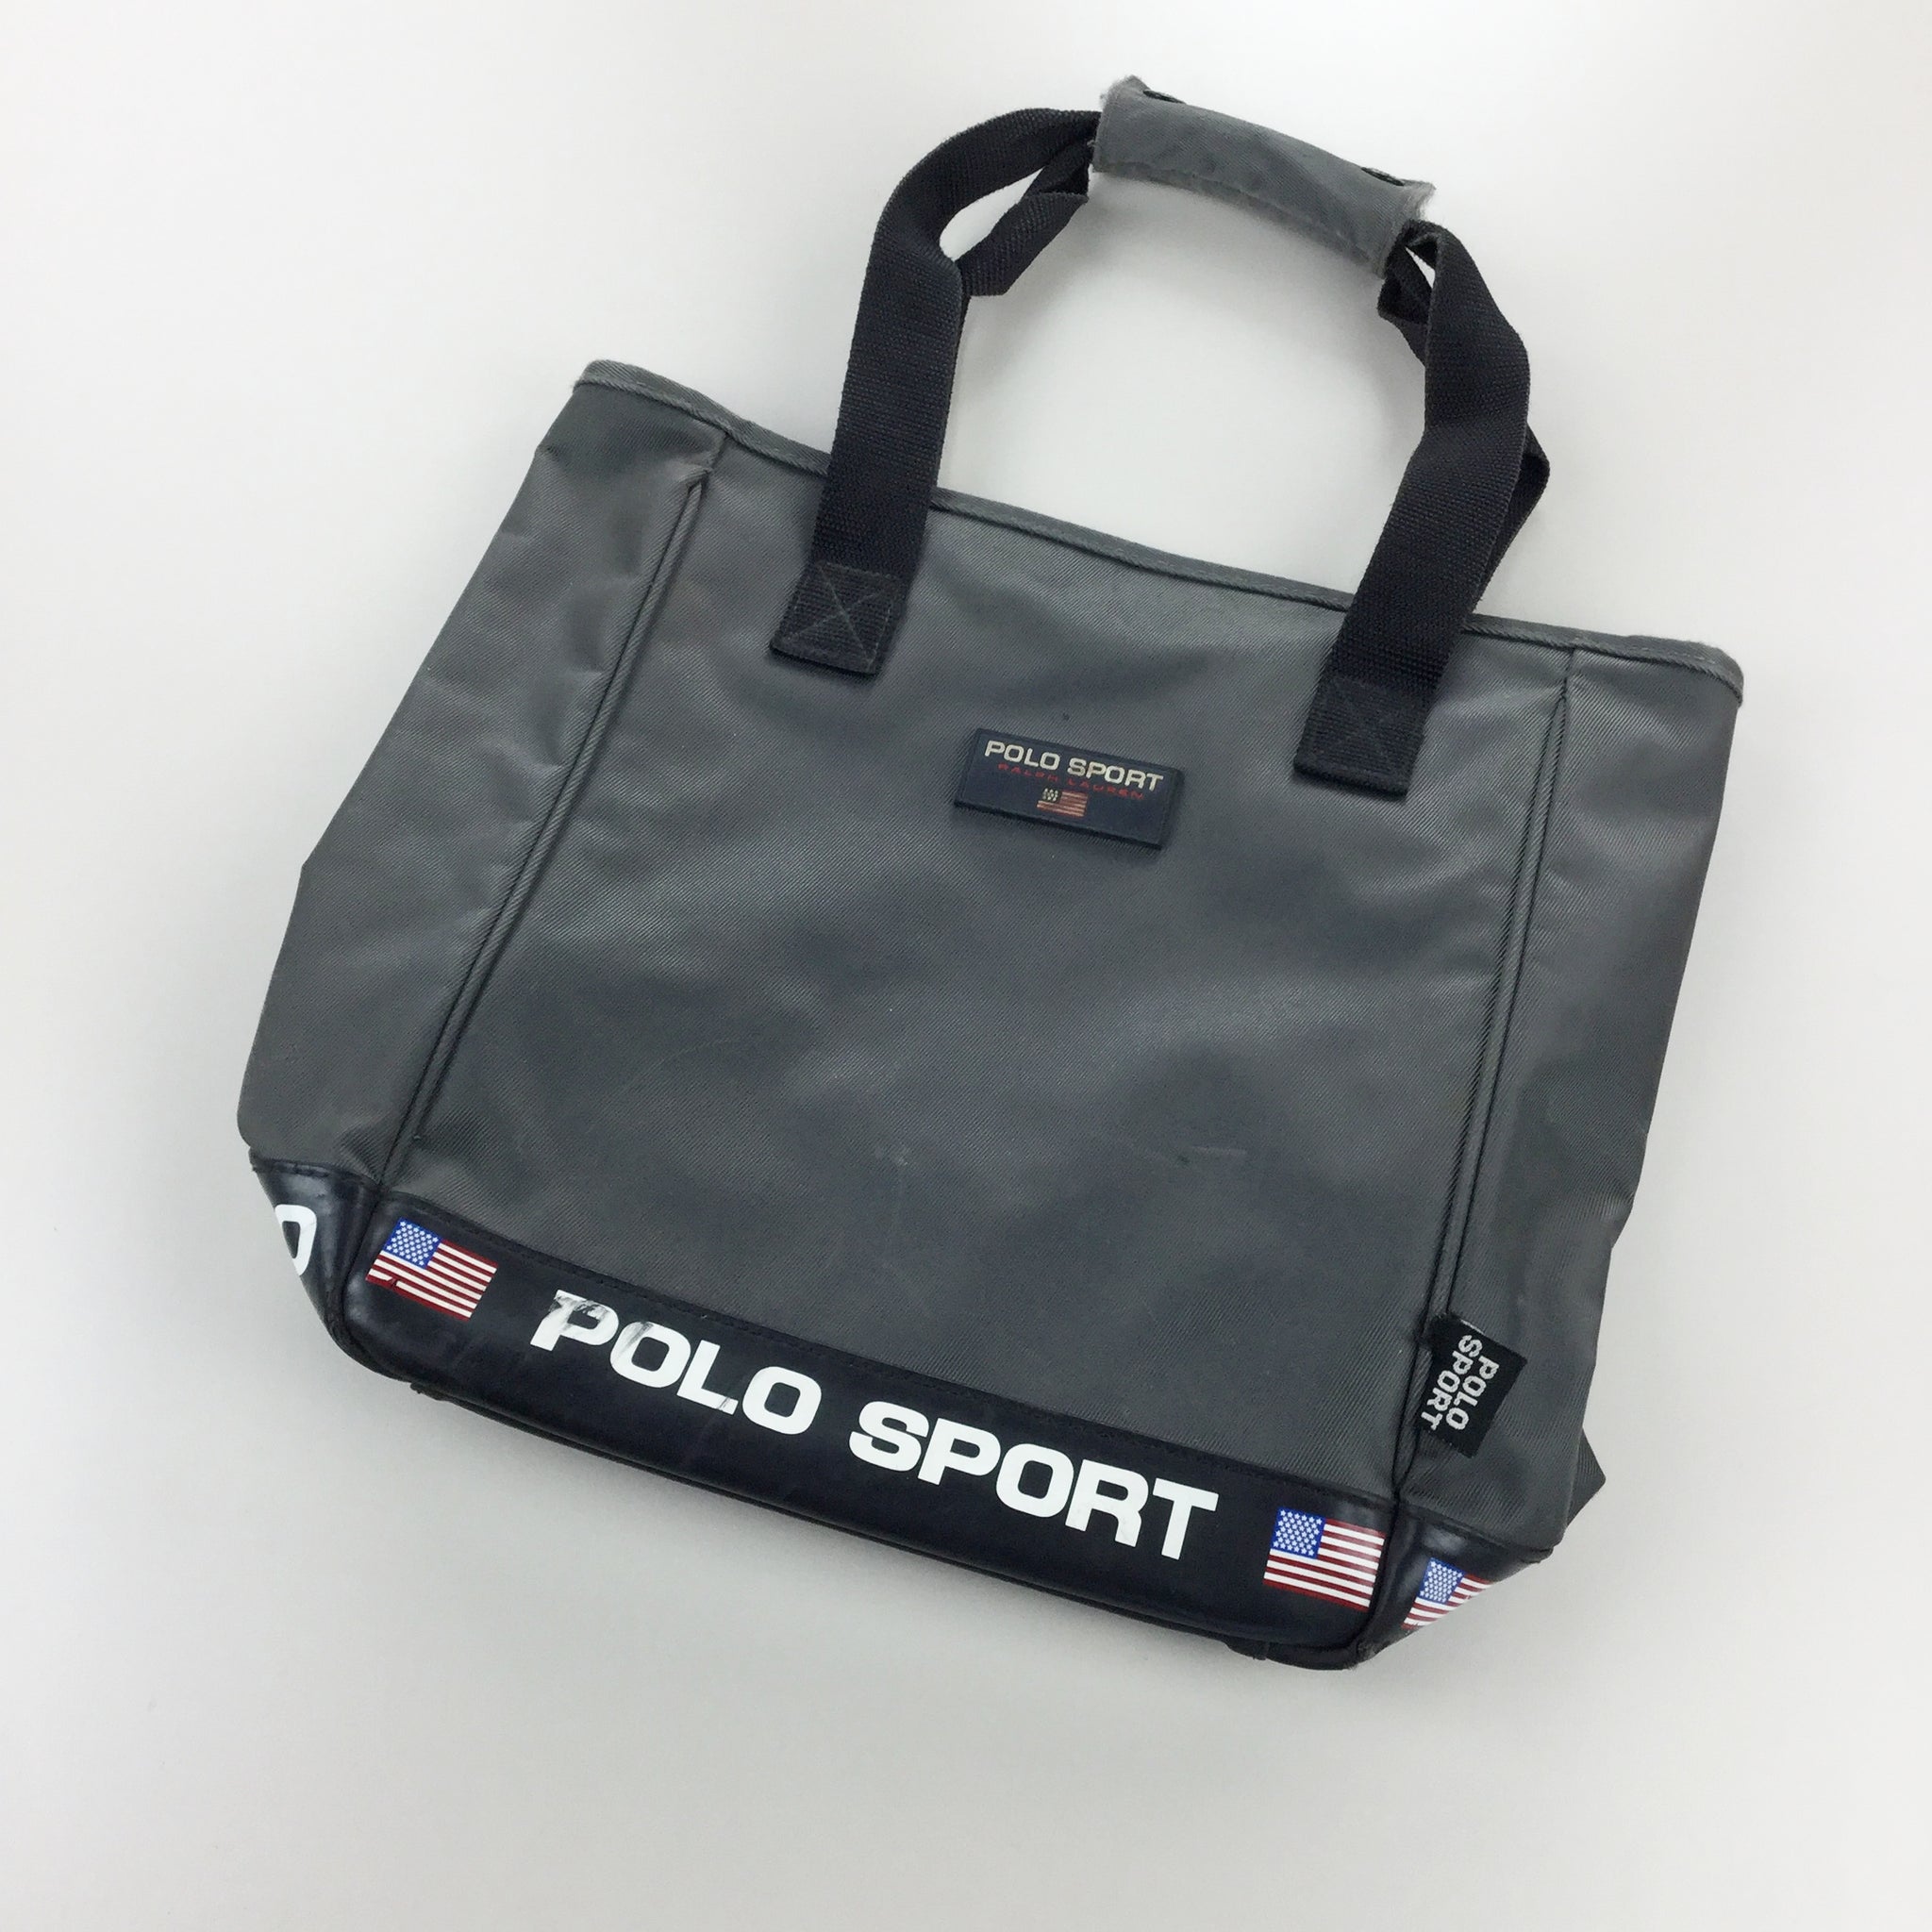 Erfgenaam kopiëren praktijk Ralph Lauren Polo Sport Shopping Bag | Premium Vintage